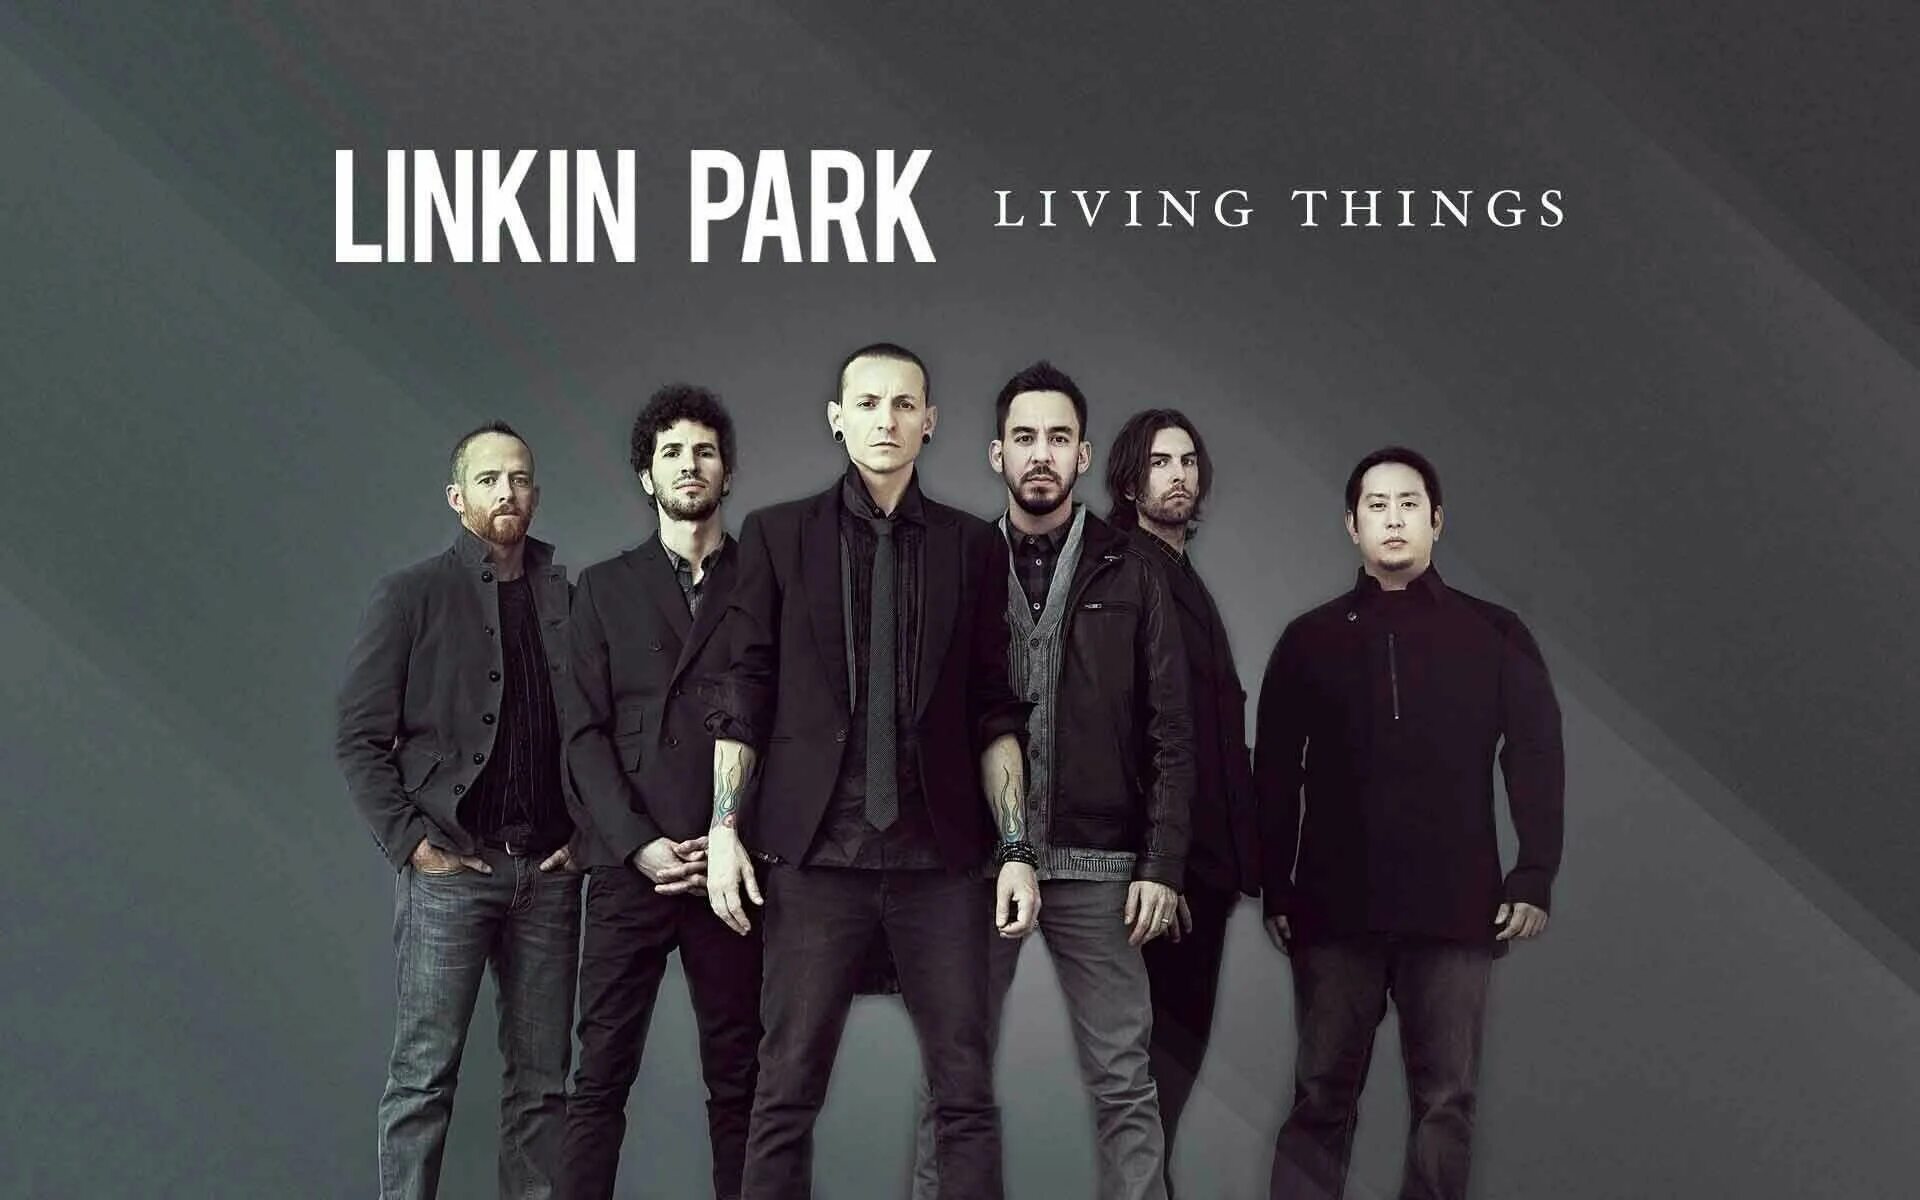 Liking park. Линкин парк 2012. Группа Linkin Park обложка. Linkin Park фото 2012.